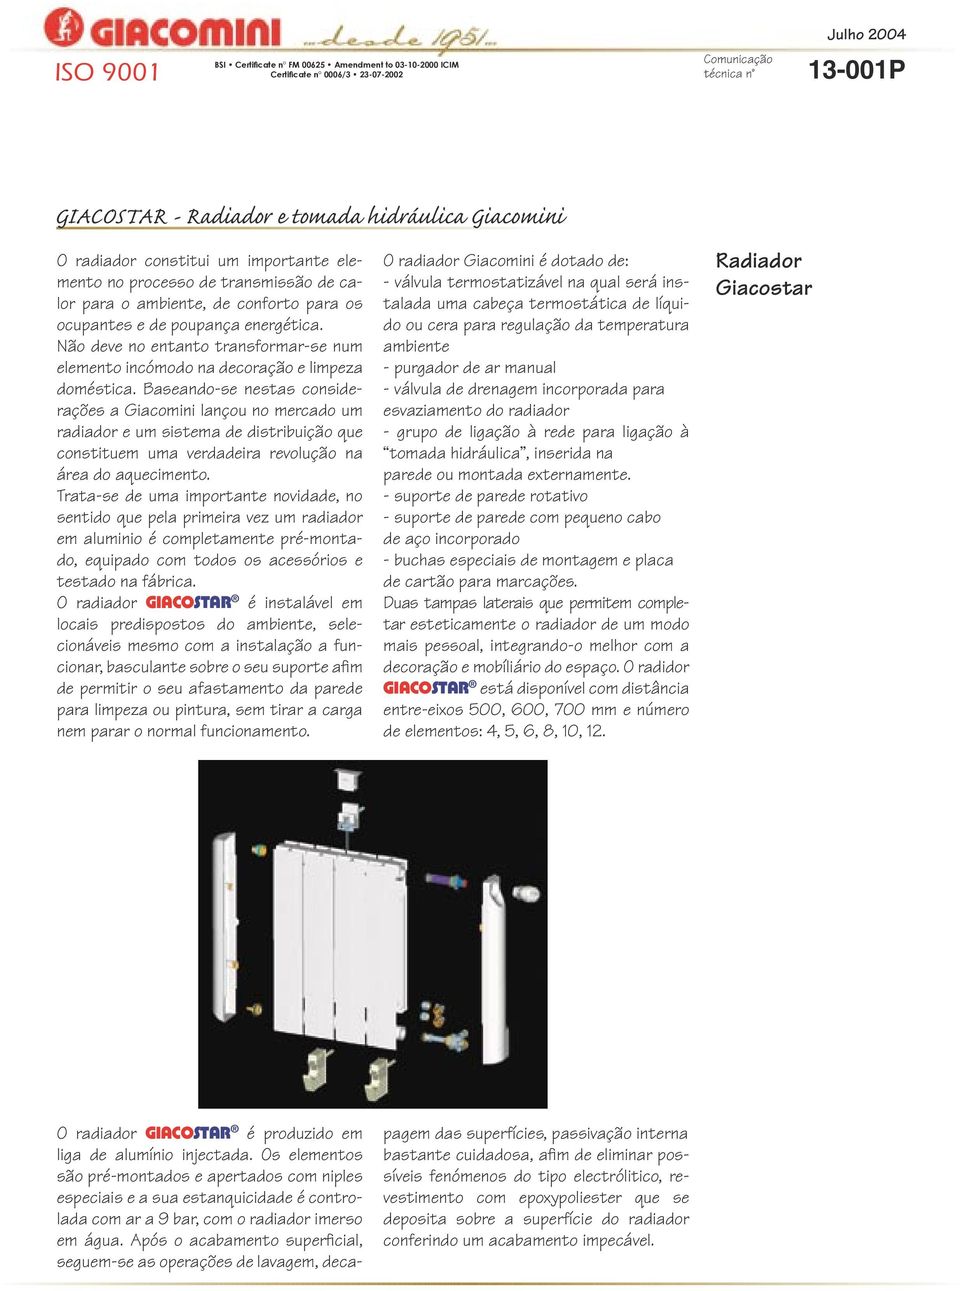 Baseando-se nestas considerações a Giacomini lançou no mercado um radiador e um sistema de distribuição que constituem uma verdadeira revolução na área do aquecimento.